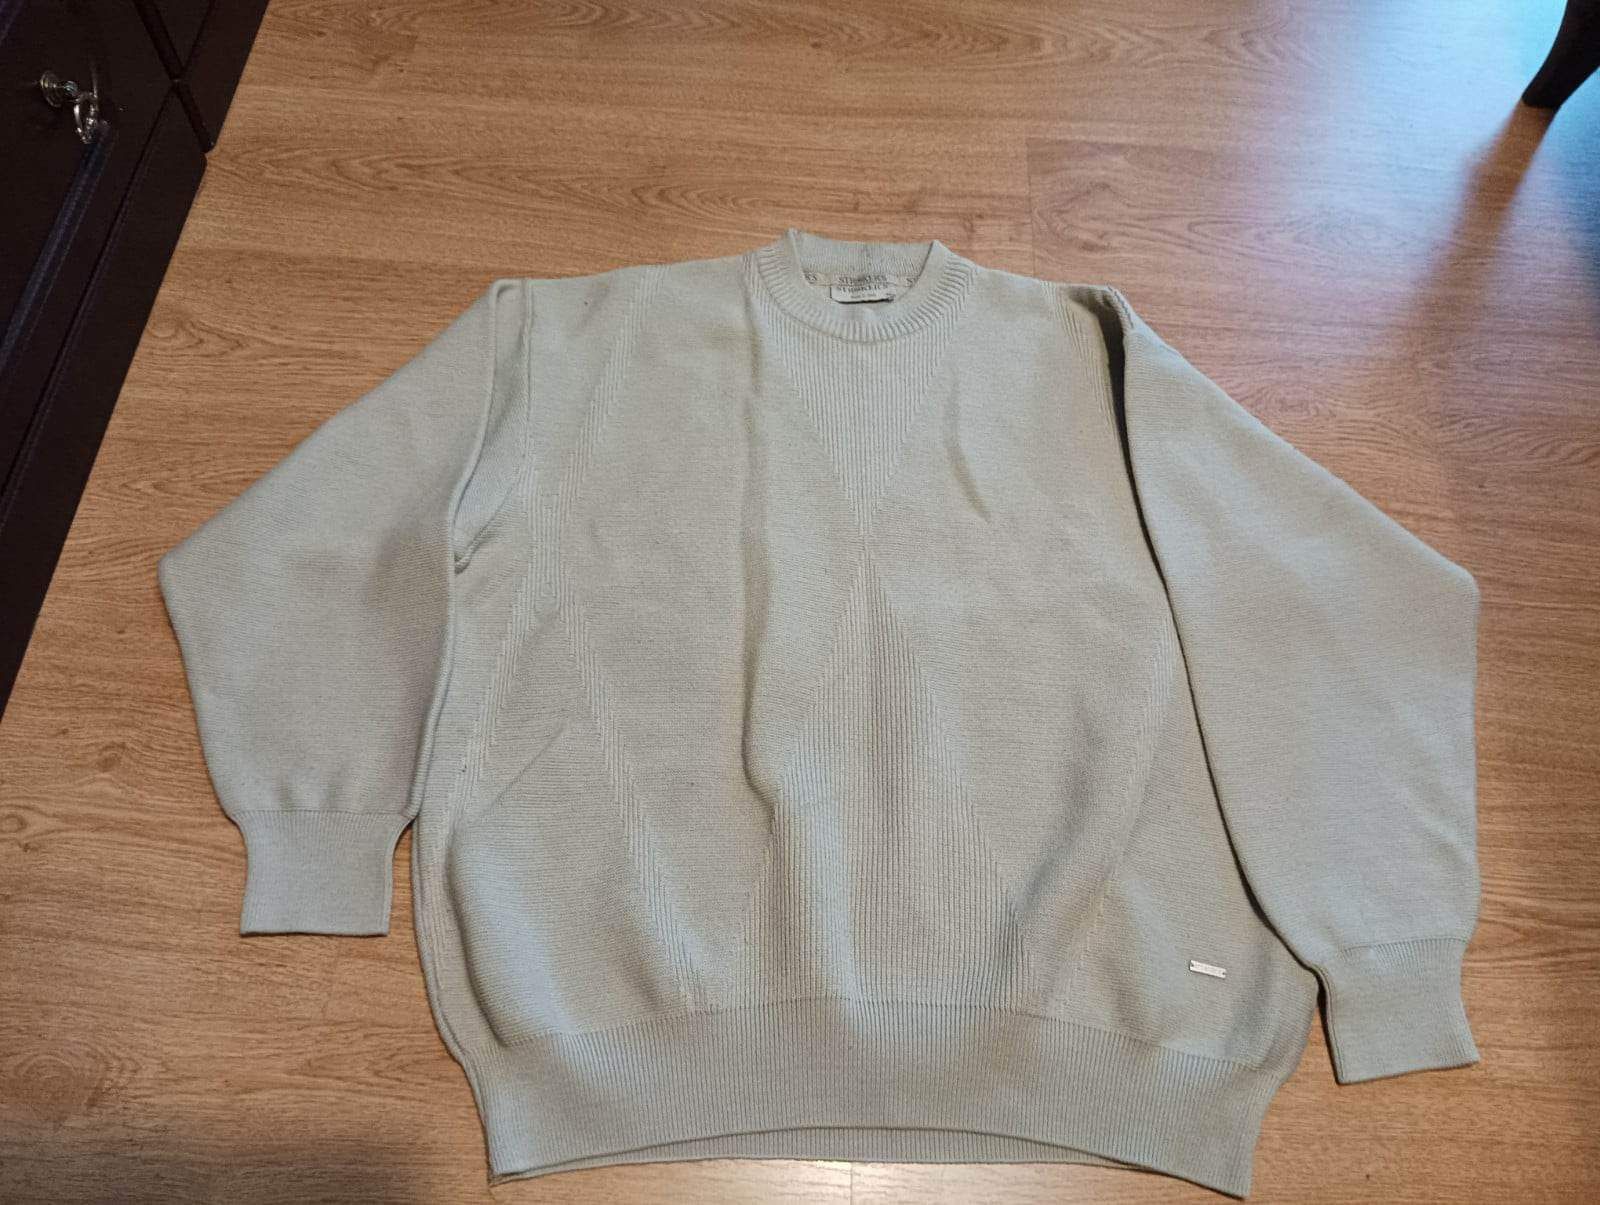 98. Sweter męski rozmiar XL włoskiej firmy Stroker's